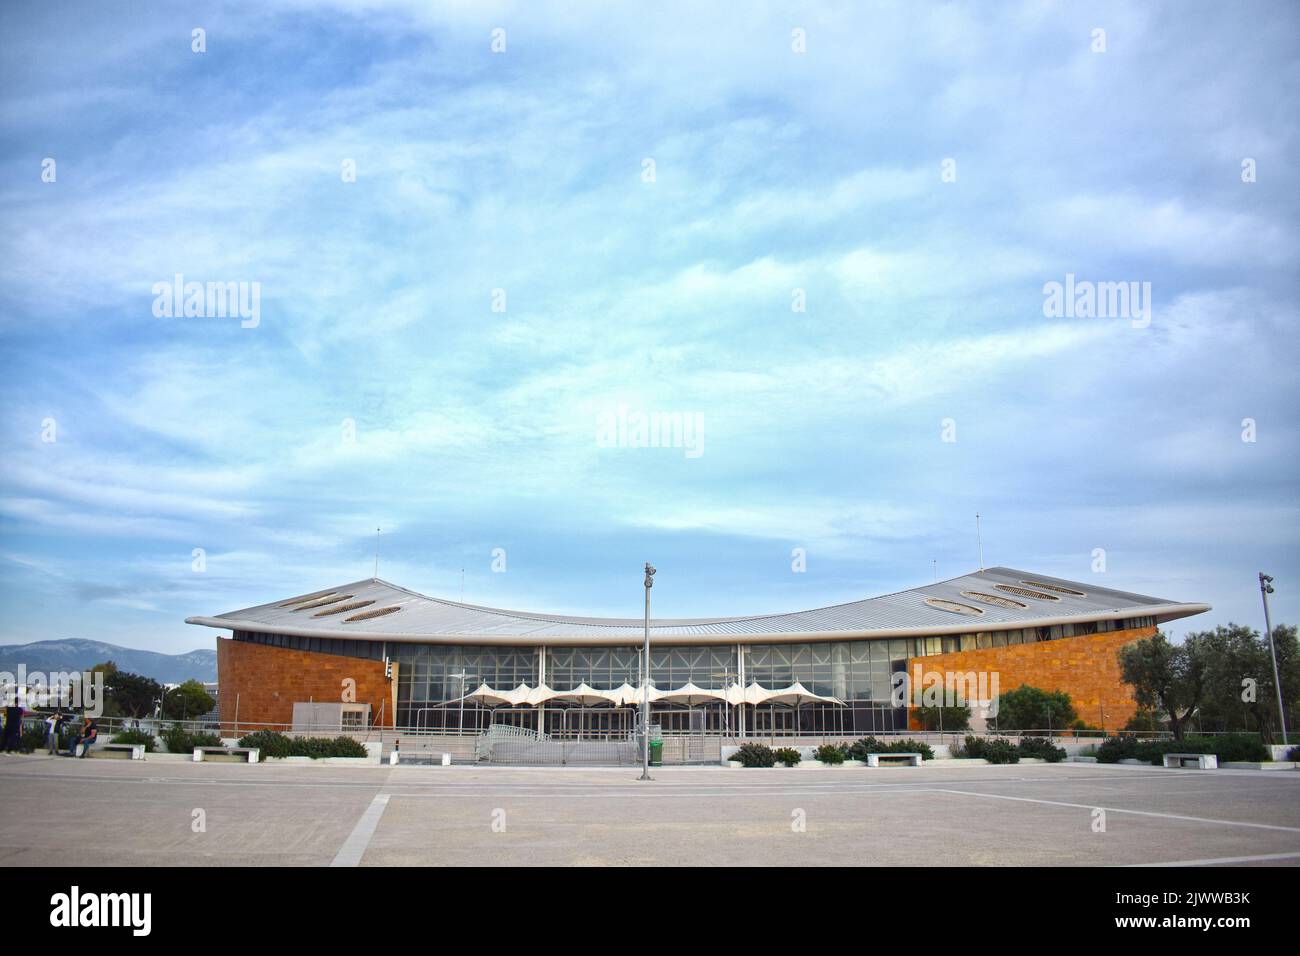 Ein Stadion namens Faliro Pavilion Arena (bekannt als das kleine Friedens- und Freundschaftsstadion oder Taekwondo Arena) in Palaio Faliro, Athen, Griechenland Stockfoto